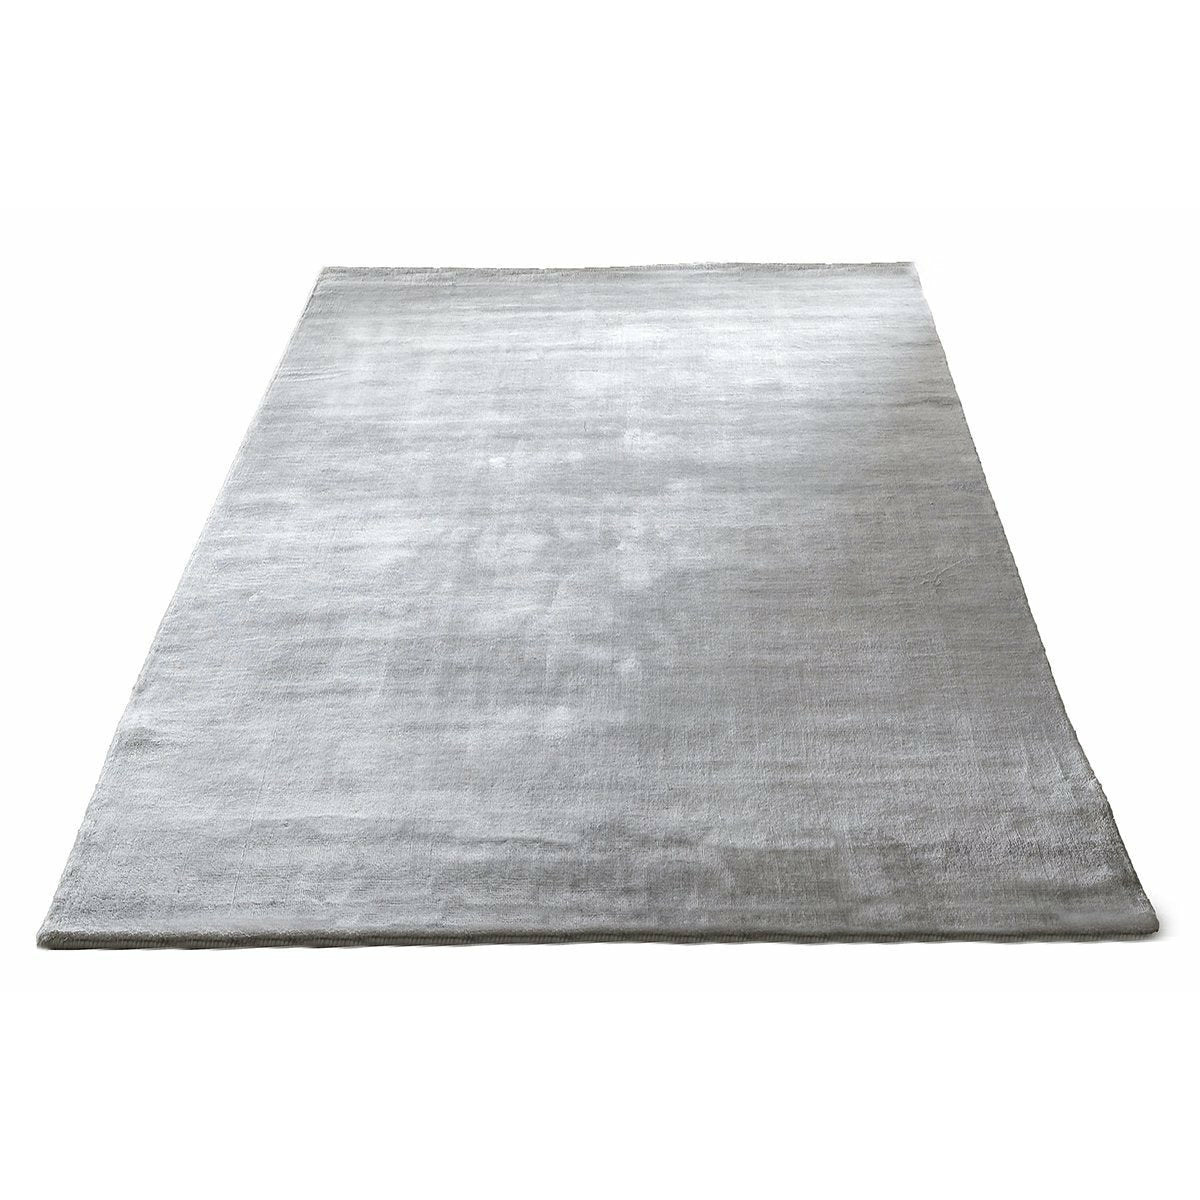 Massimo Bamboo tapis gris clair, 140x200 cm